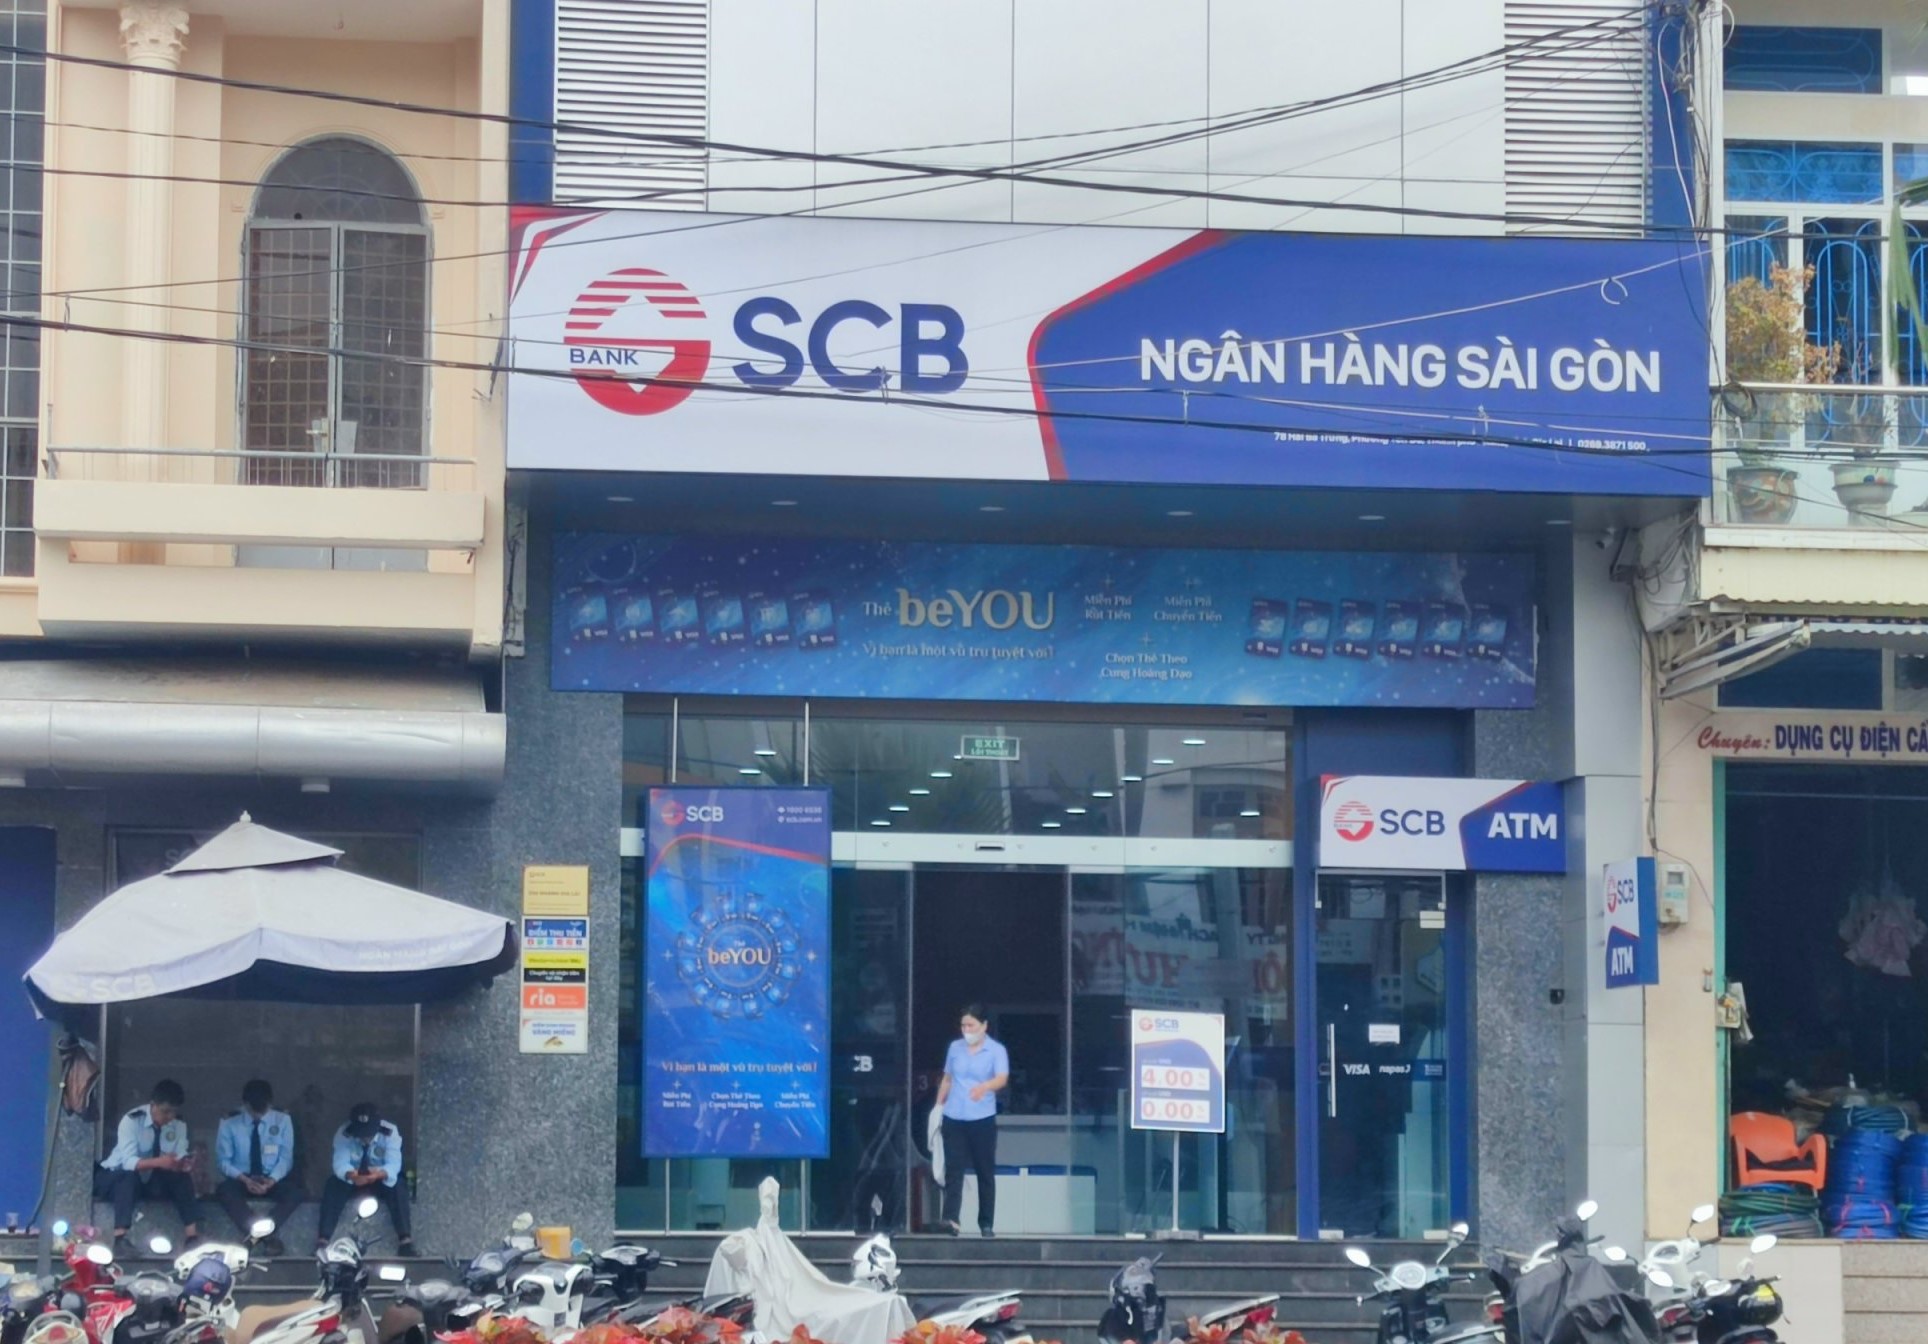 Phó giám đốc chi nhánh 1 ngân hàng ở Gia Lai làm giả hồ sơ để rút tiền- Ảnh 1.